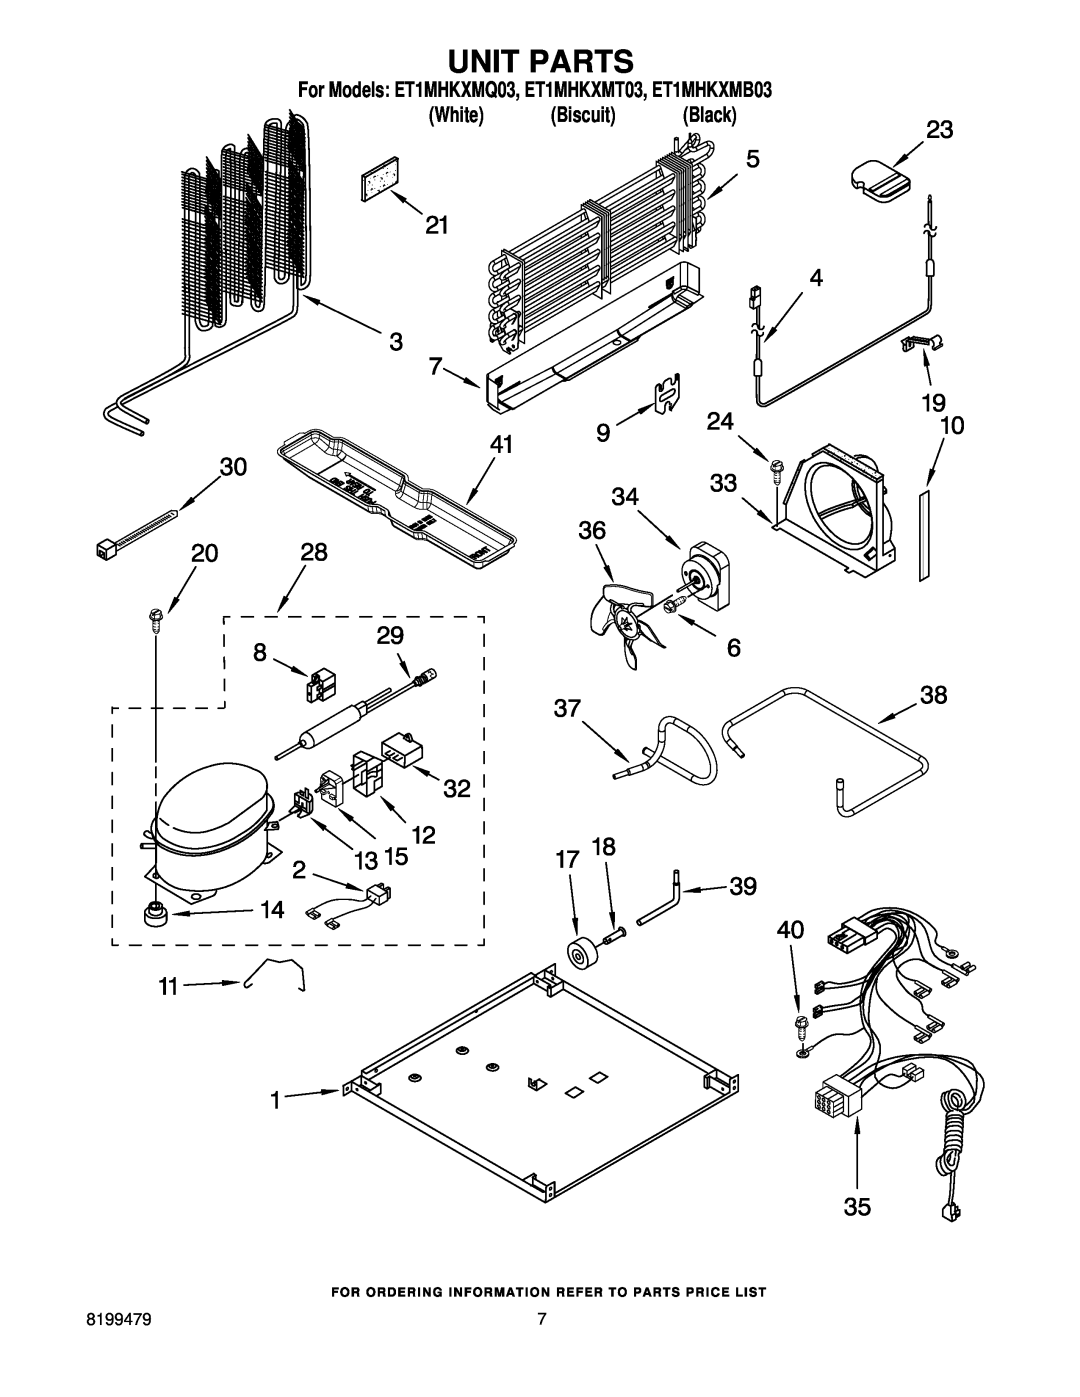 Whirlpool manual Unit Parts, For Models ET1MHKXMQ03, ET1MHKXMT03, ET1MHKXMB03 White Biscuit Black 